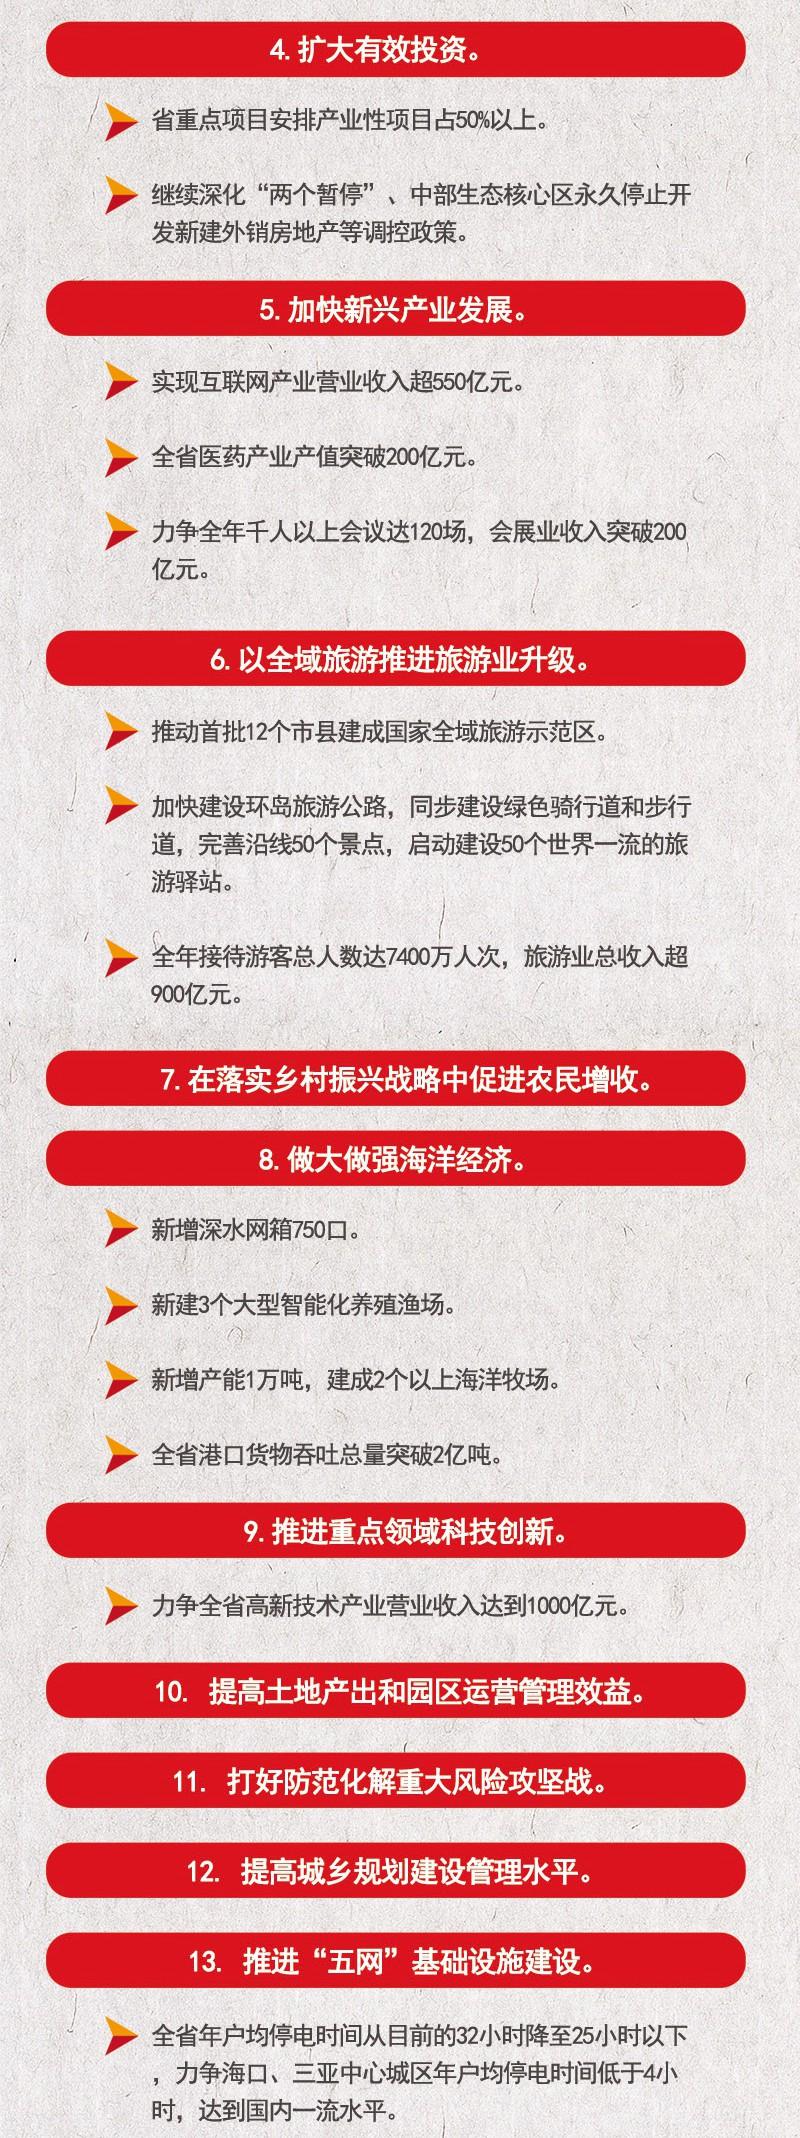 一张图读懂2018海南省政府工作报告